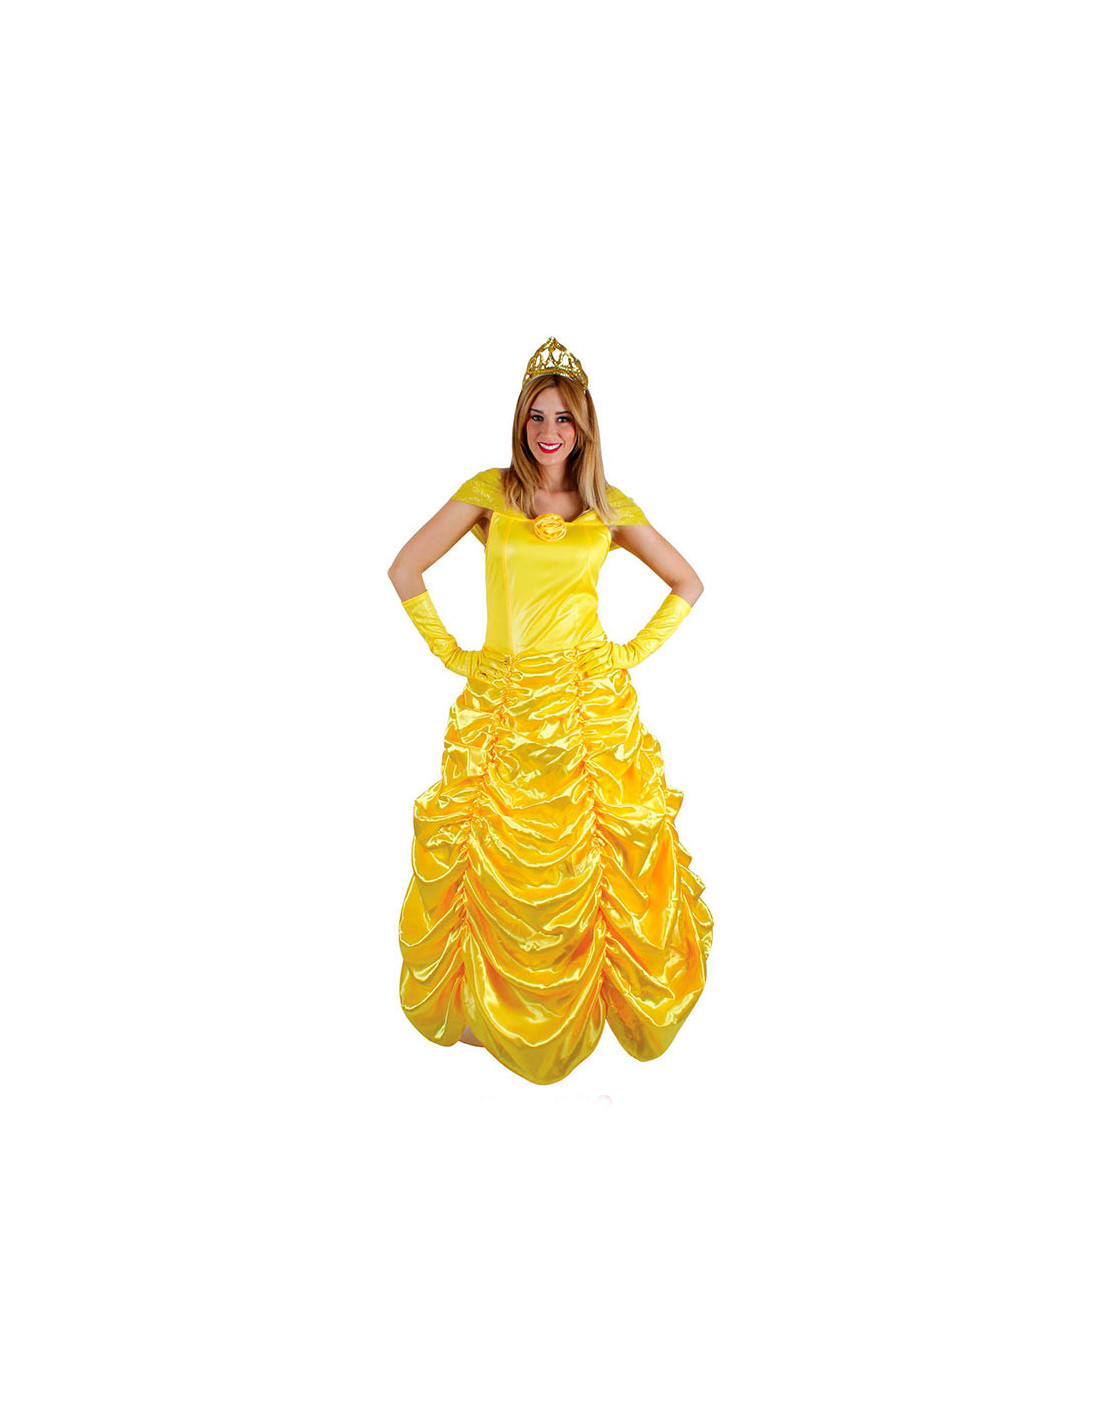 Disfraz princesa amarilla mujer bella en #sevilla para #carnaval Disney